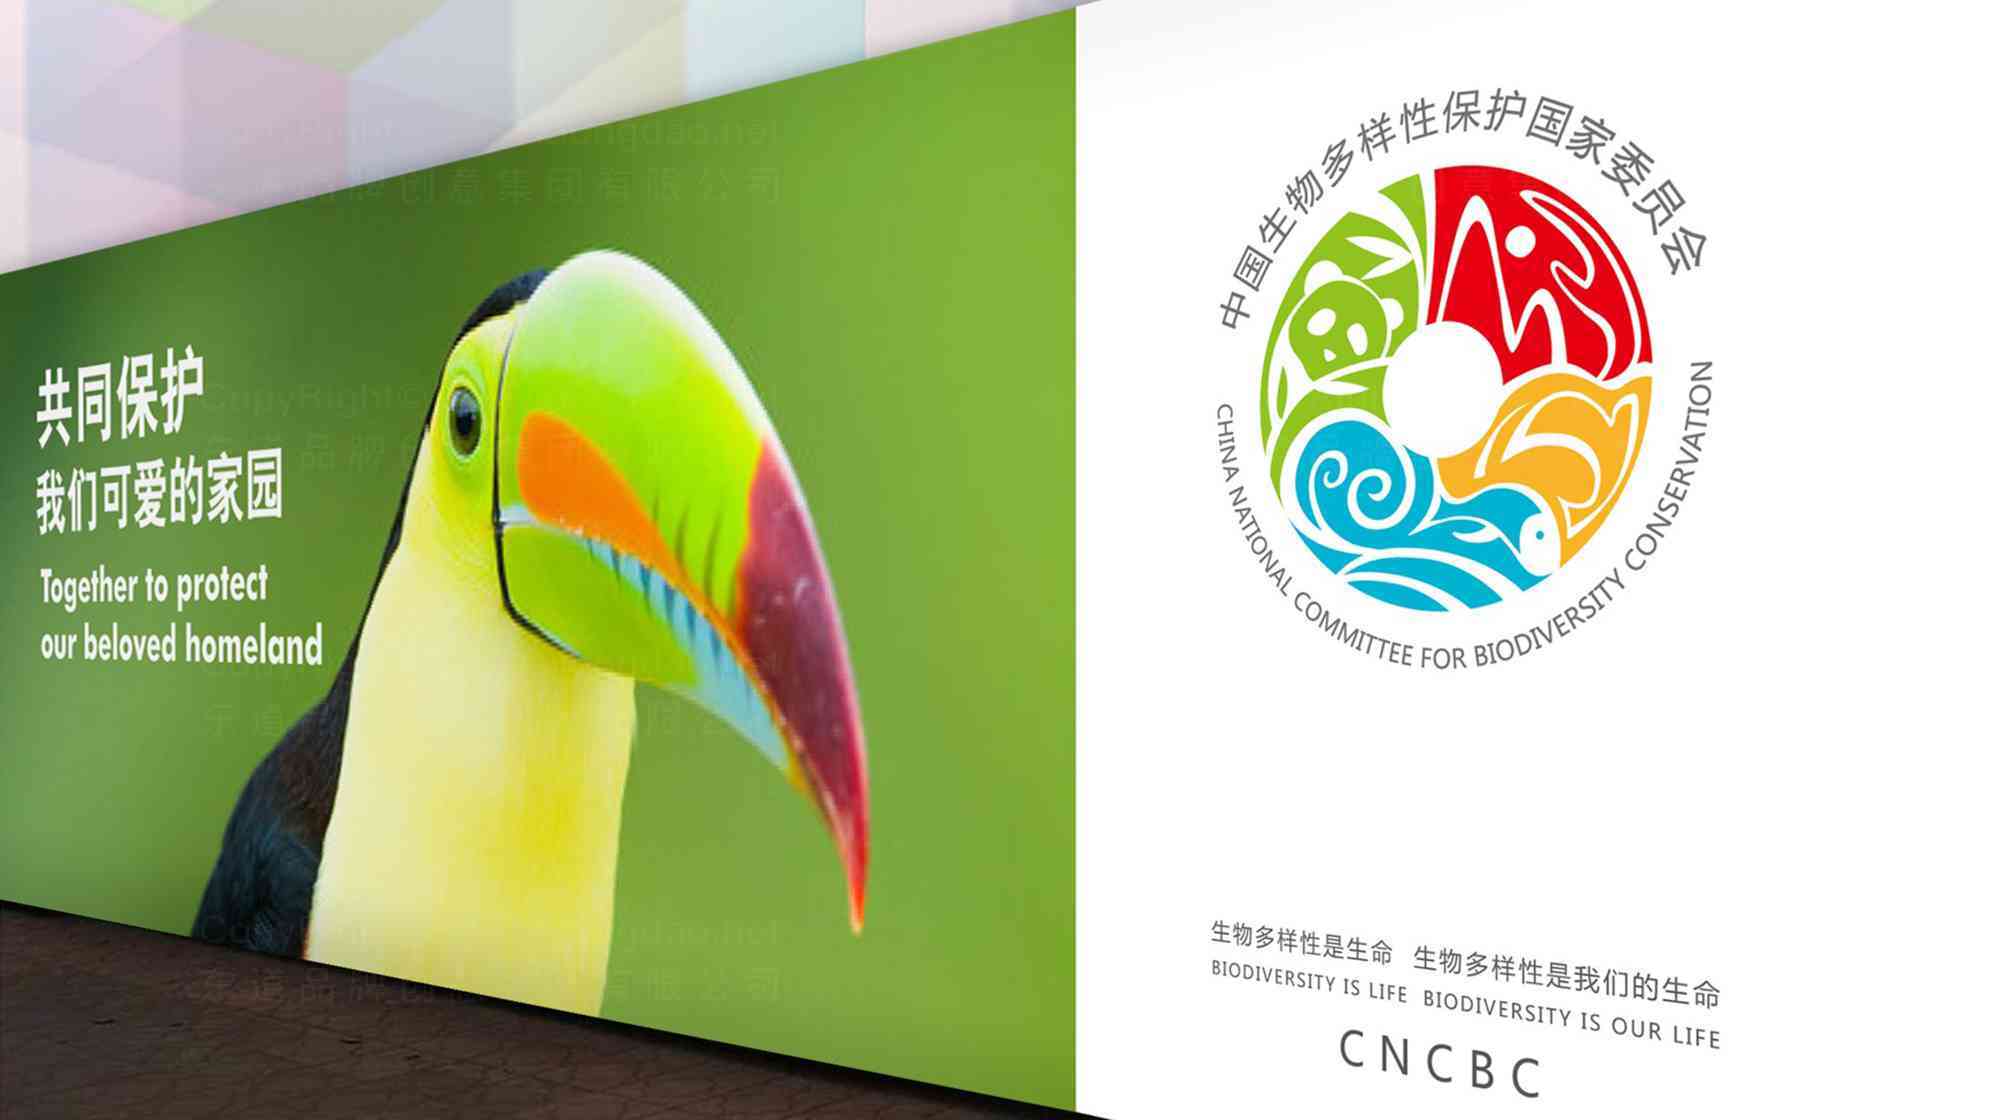 中國生物多樣性保護國家委員會企業品牌logo設計圖片素材_4